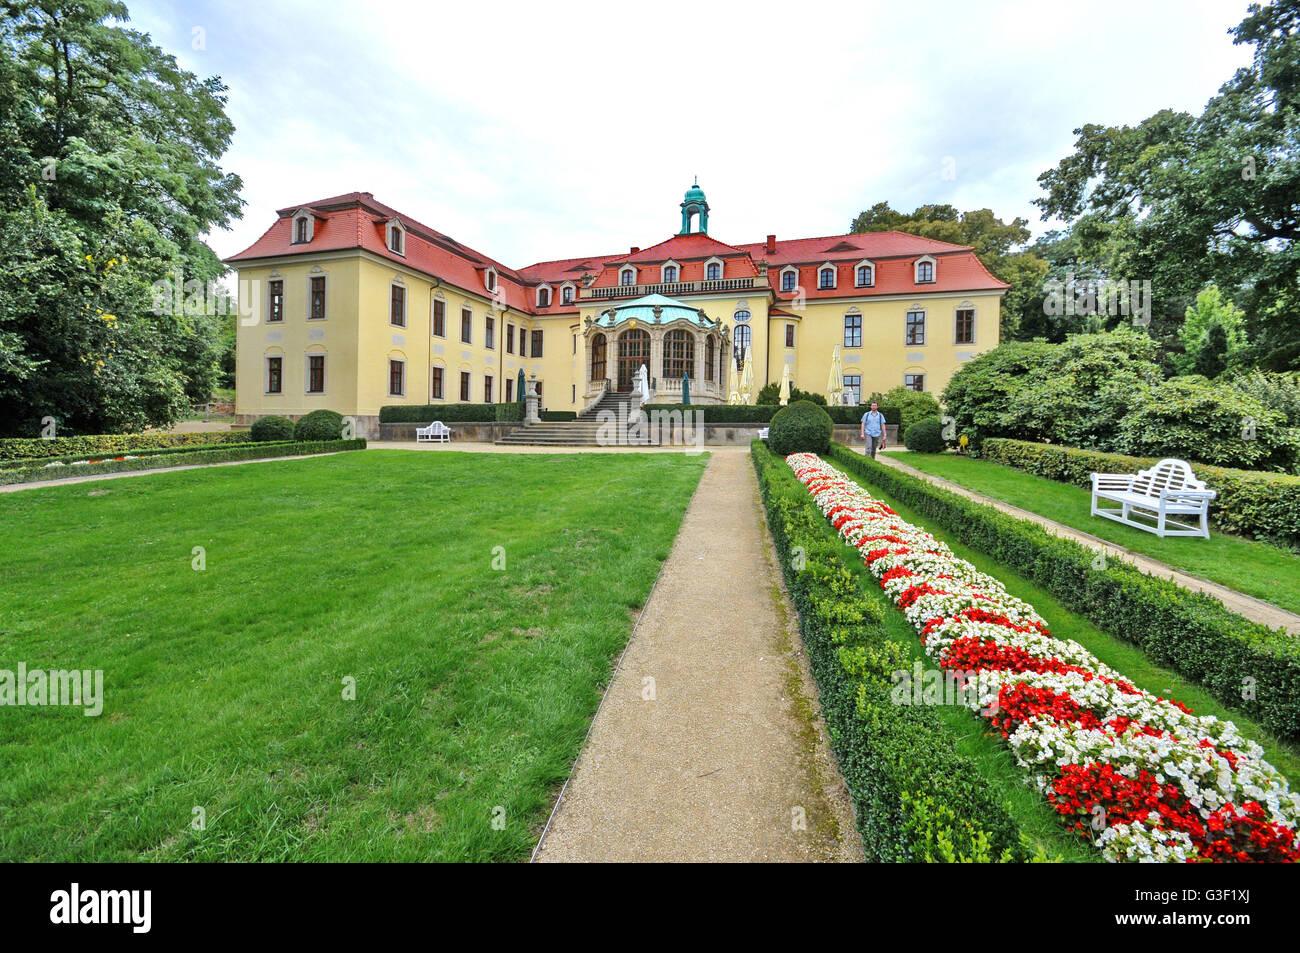 Deutschland, Sachsen, Meißen, Proschwitzer Schloss, Garten, Pavillon, Gastronomie, Stockfoto